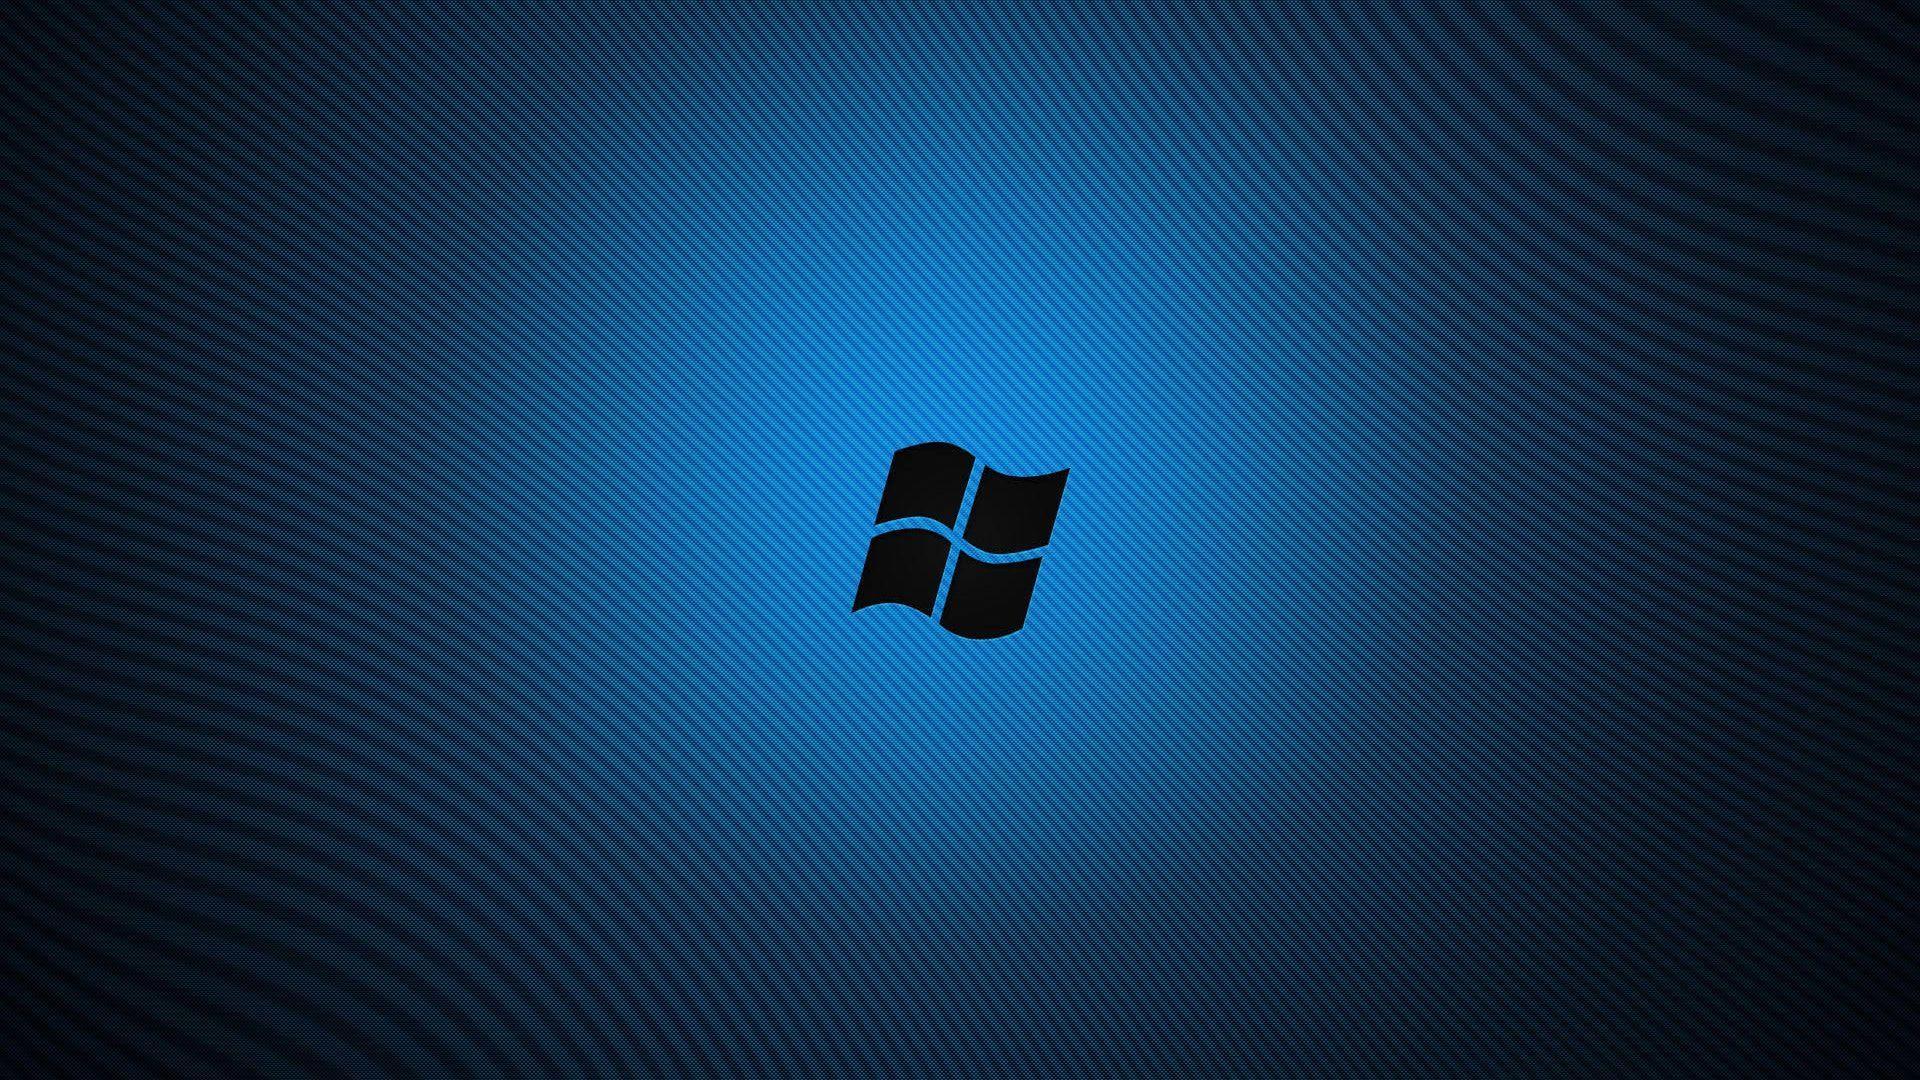 Windows 8 Blue Desktop Background. Widescreen Wallpaper. High